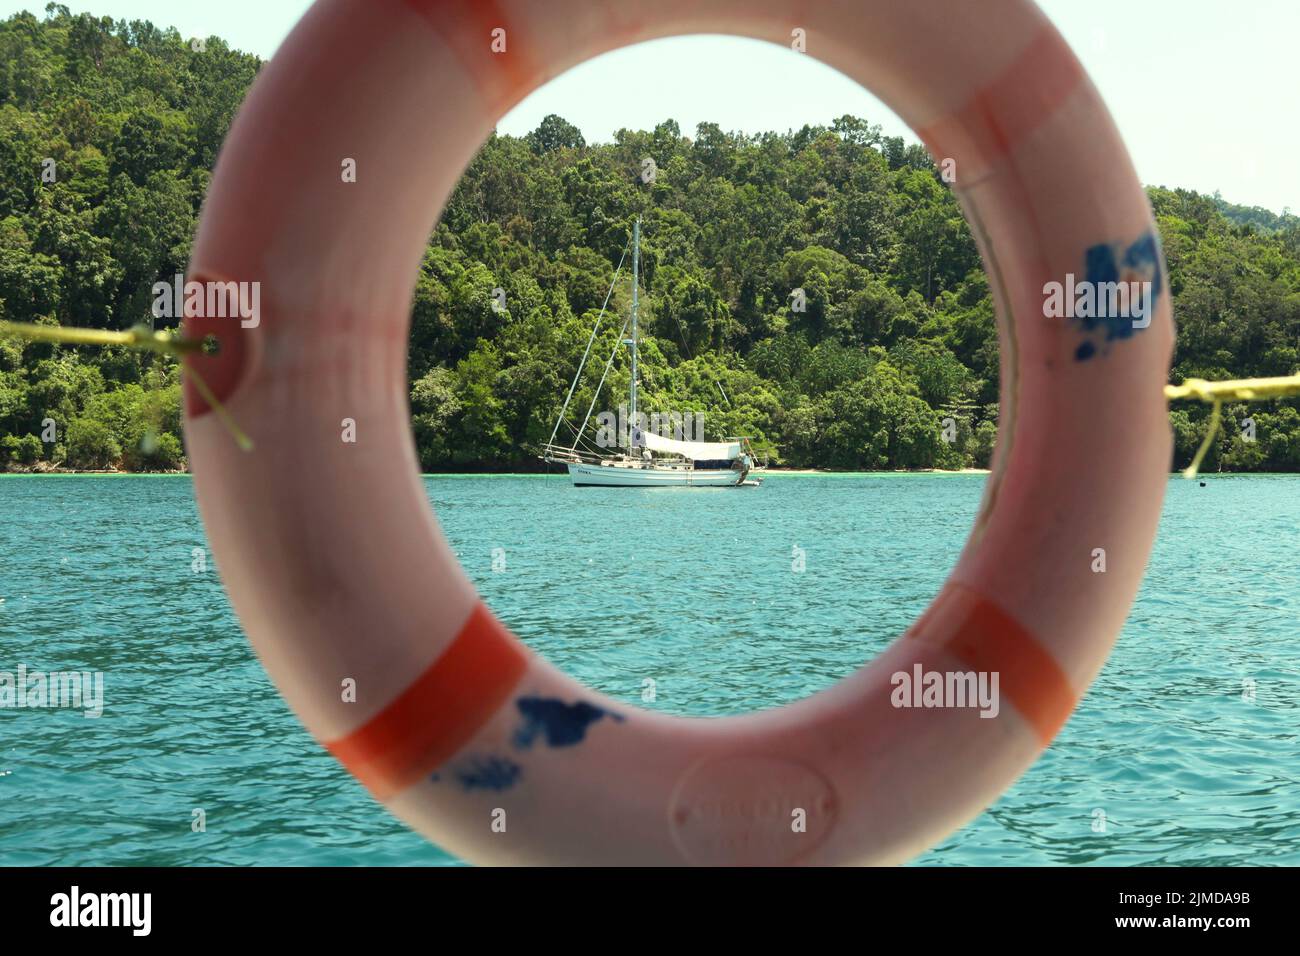 Se puede ver un barco turístico en las aguas costeras dentro del parque Tunku Abdul Rahman en Sabah, Malasia. Foto de stock